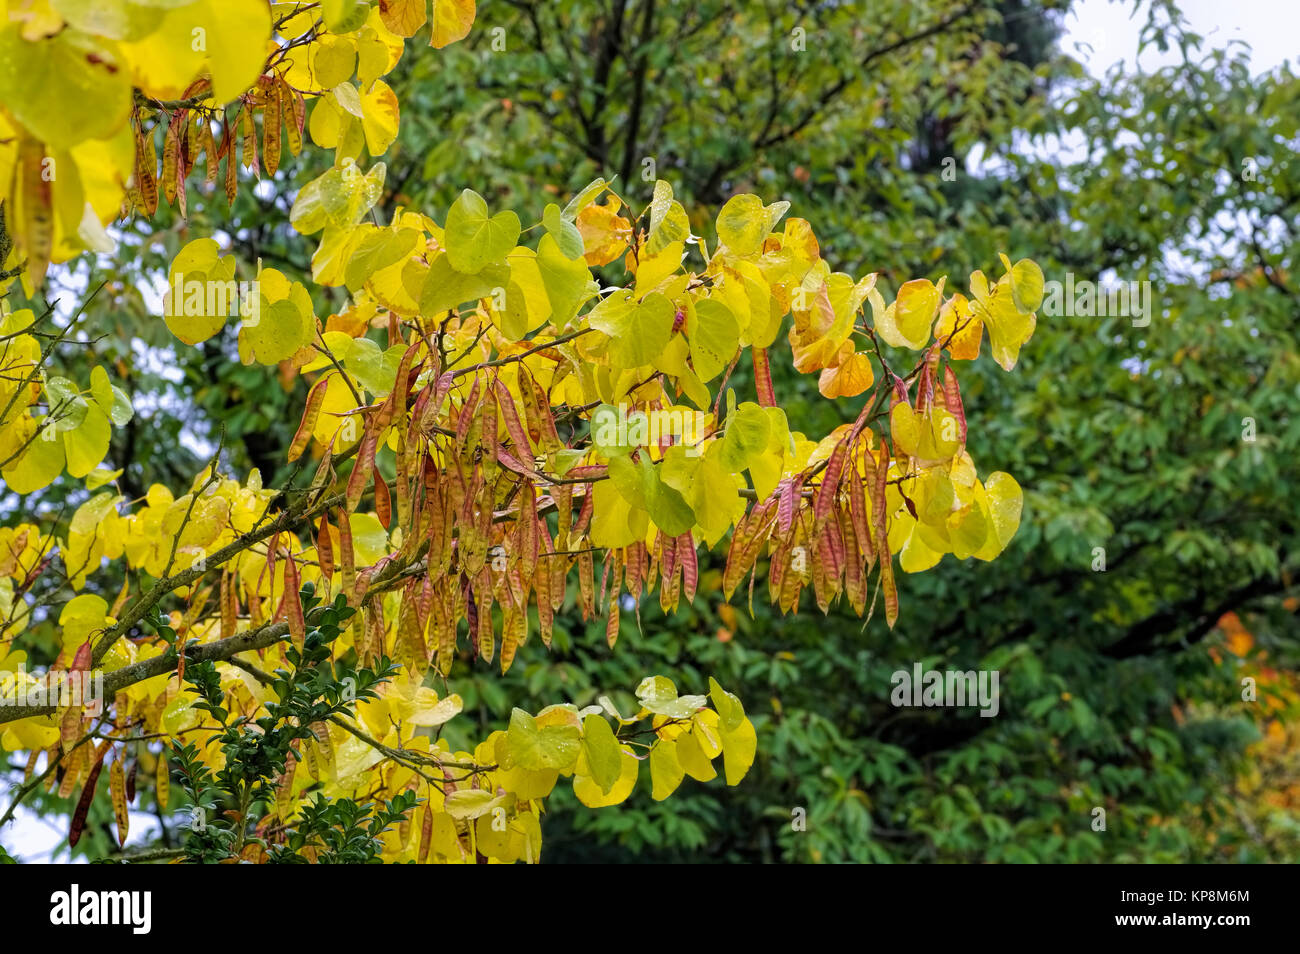 Judasbaum im Herbst - Judas tree in autumn, indian summer Stock Photo